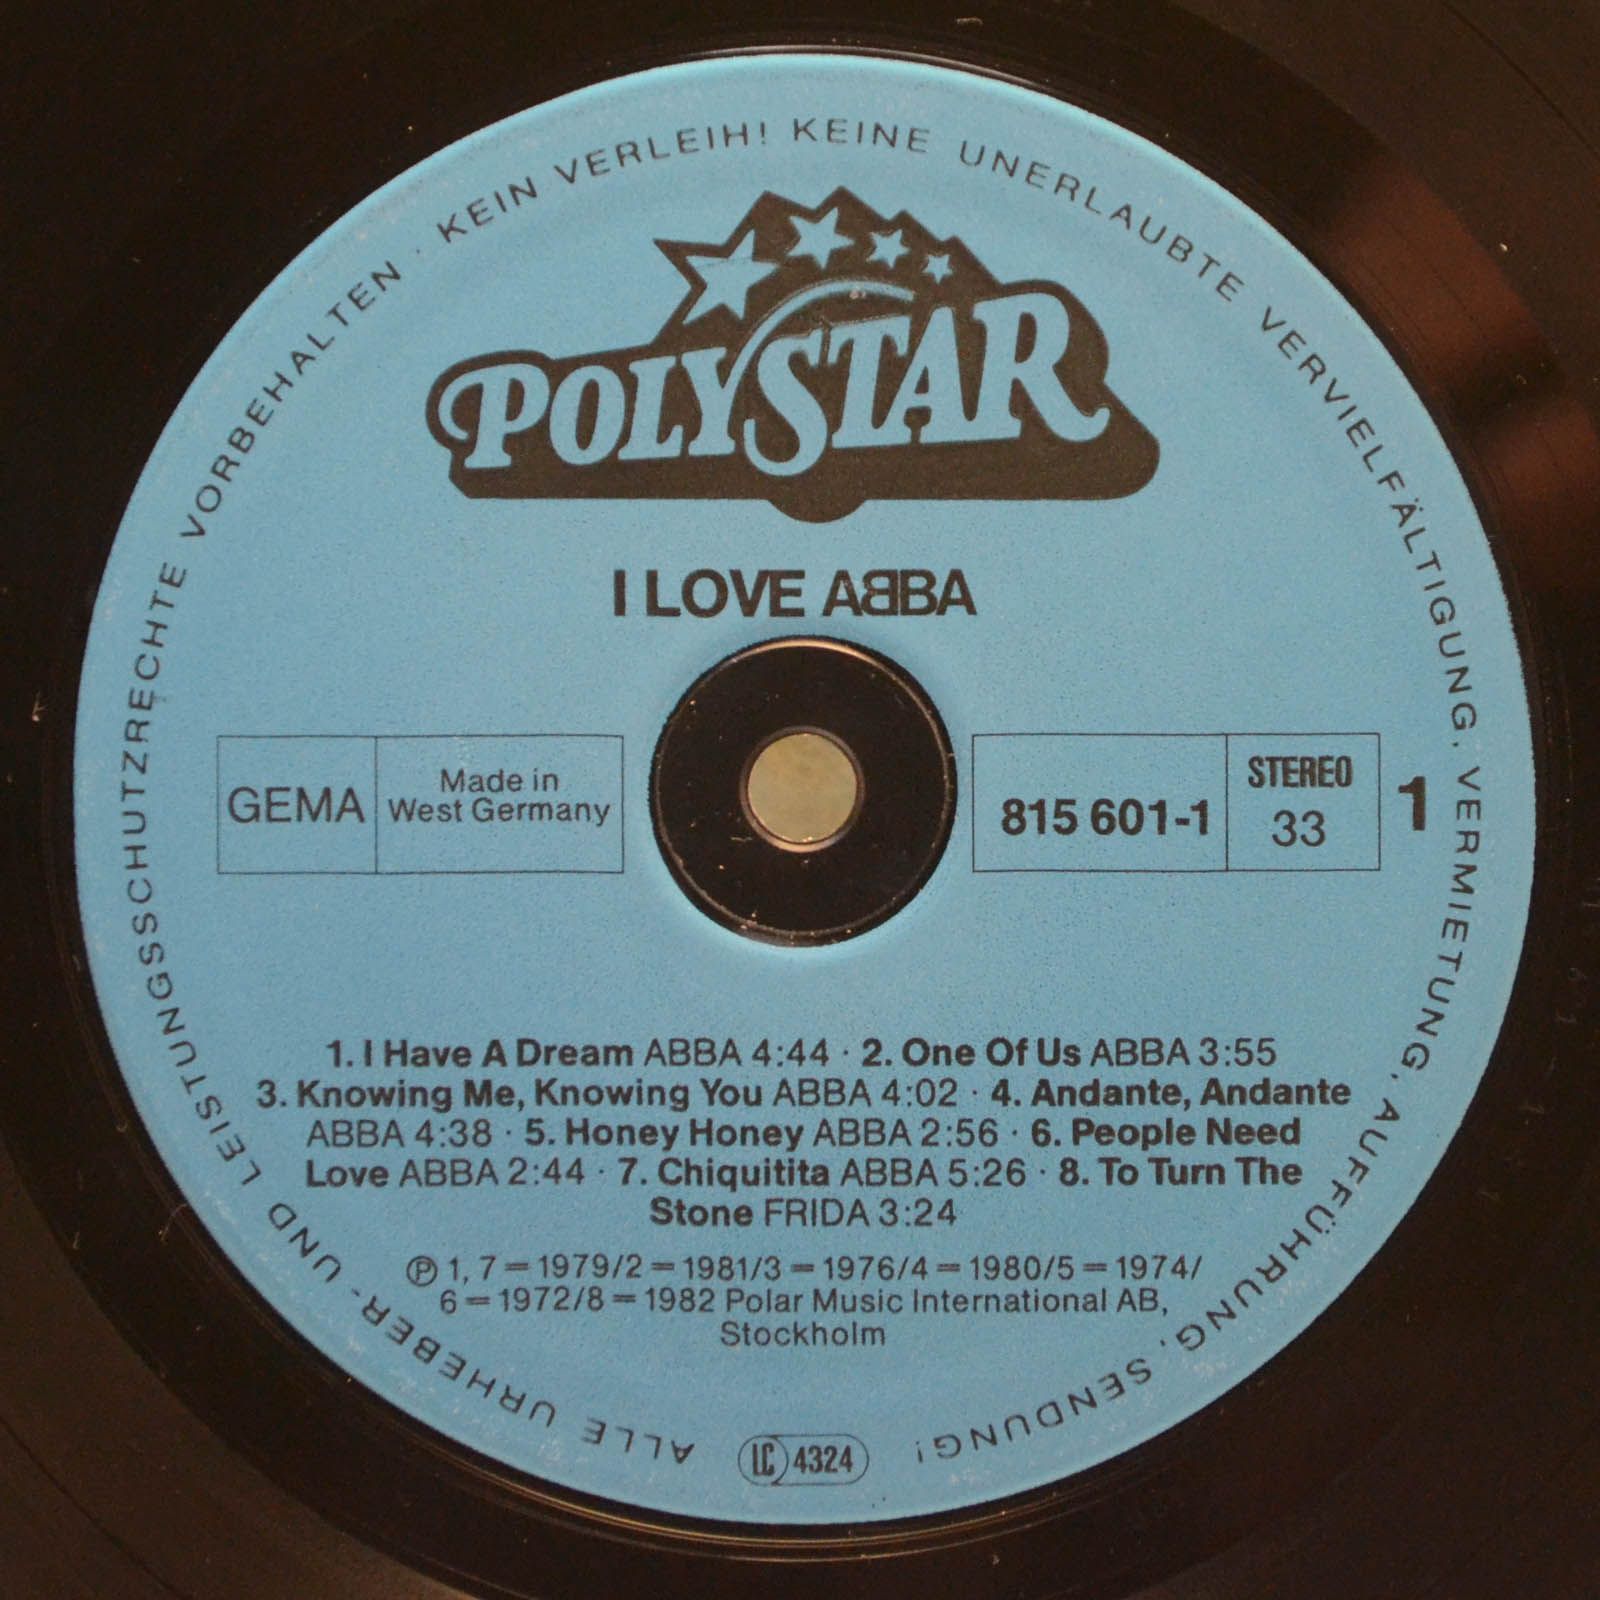 ABBA — I Love ABBA, 1983